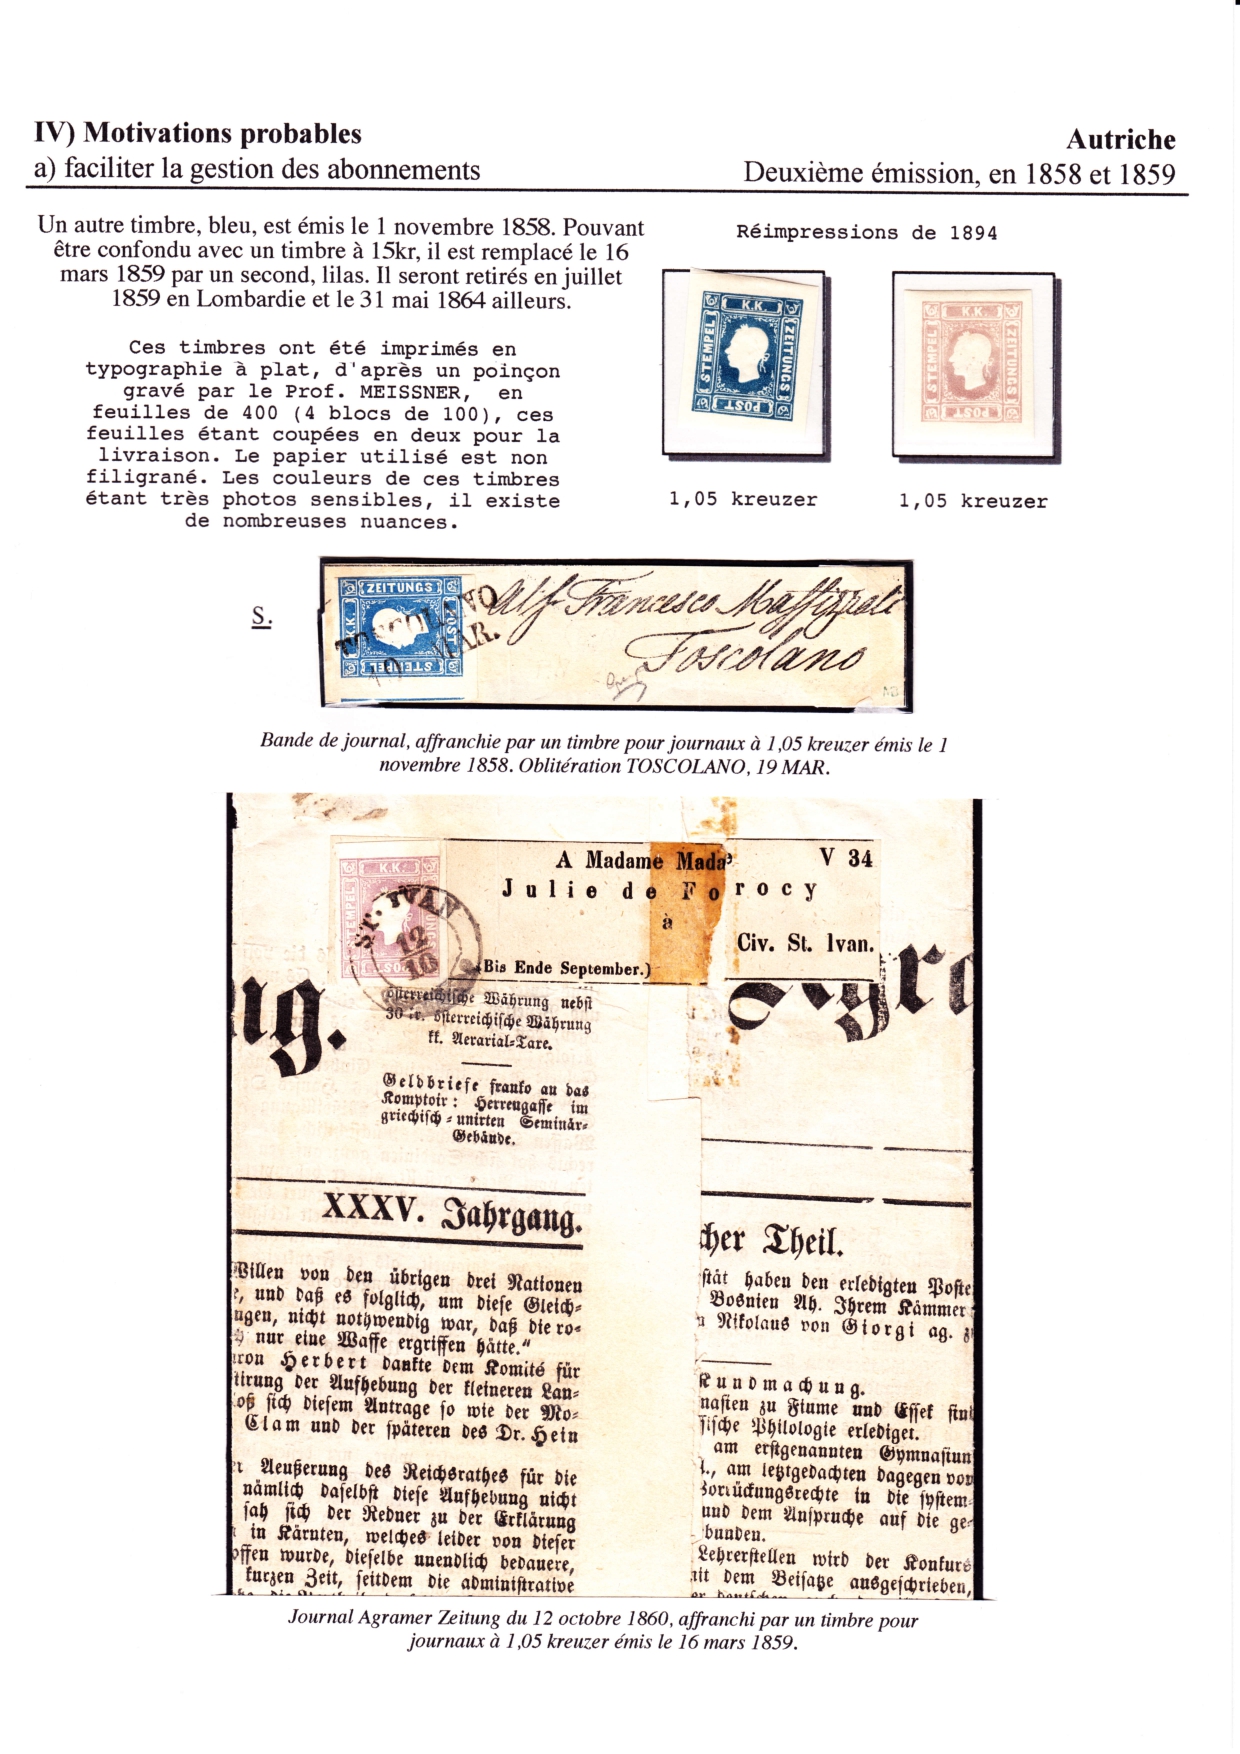 Les d��buts des timbres sans valeur faciale apparente p. 48